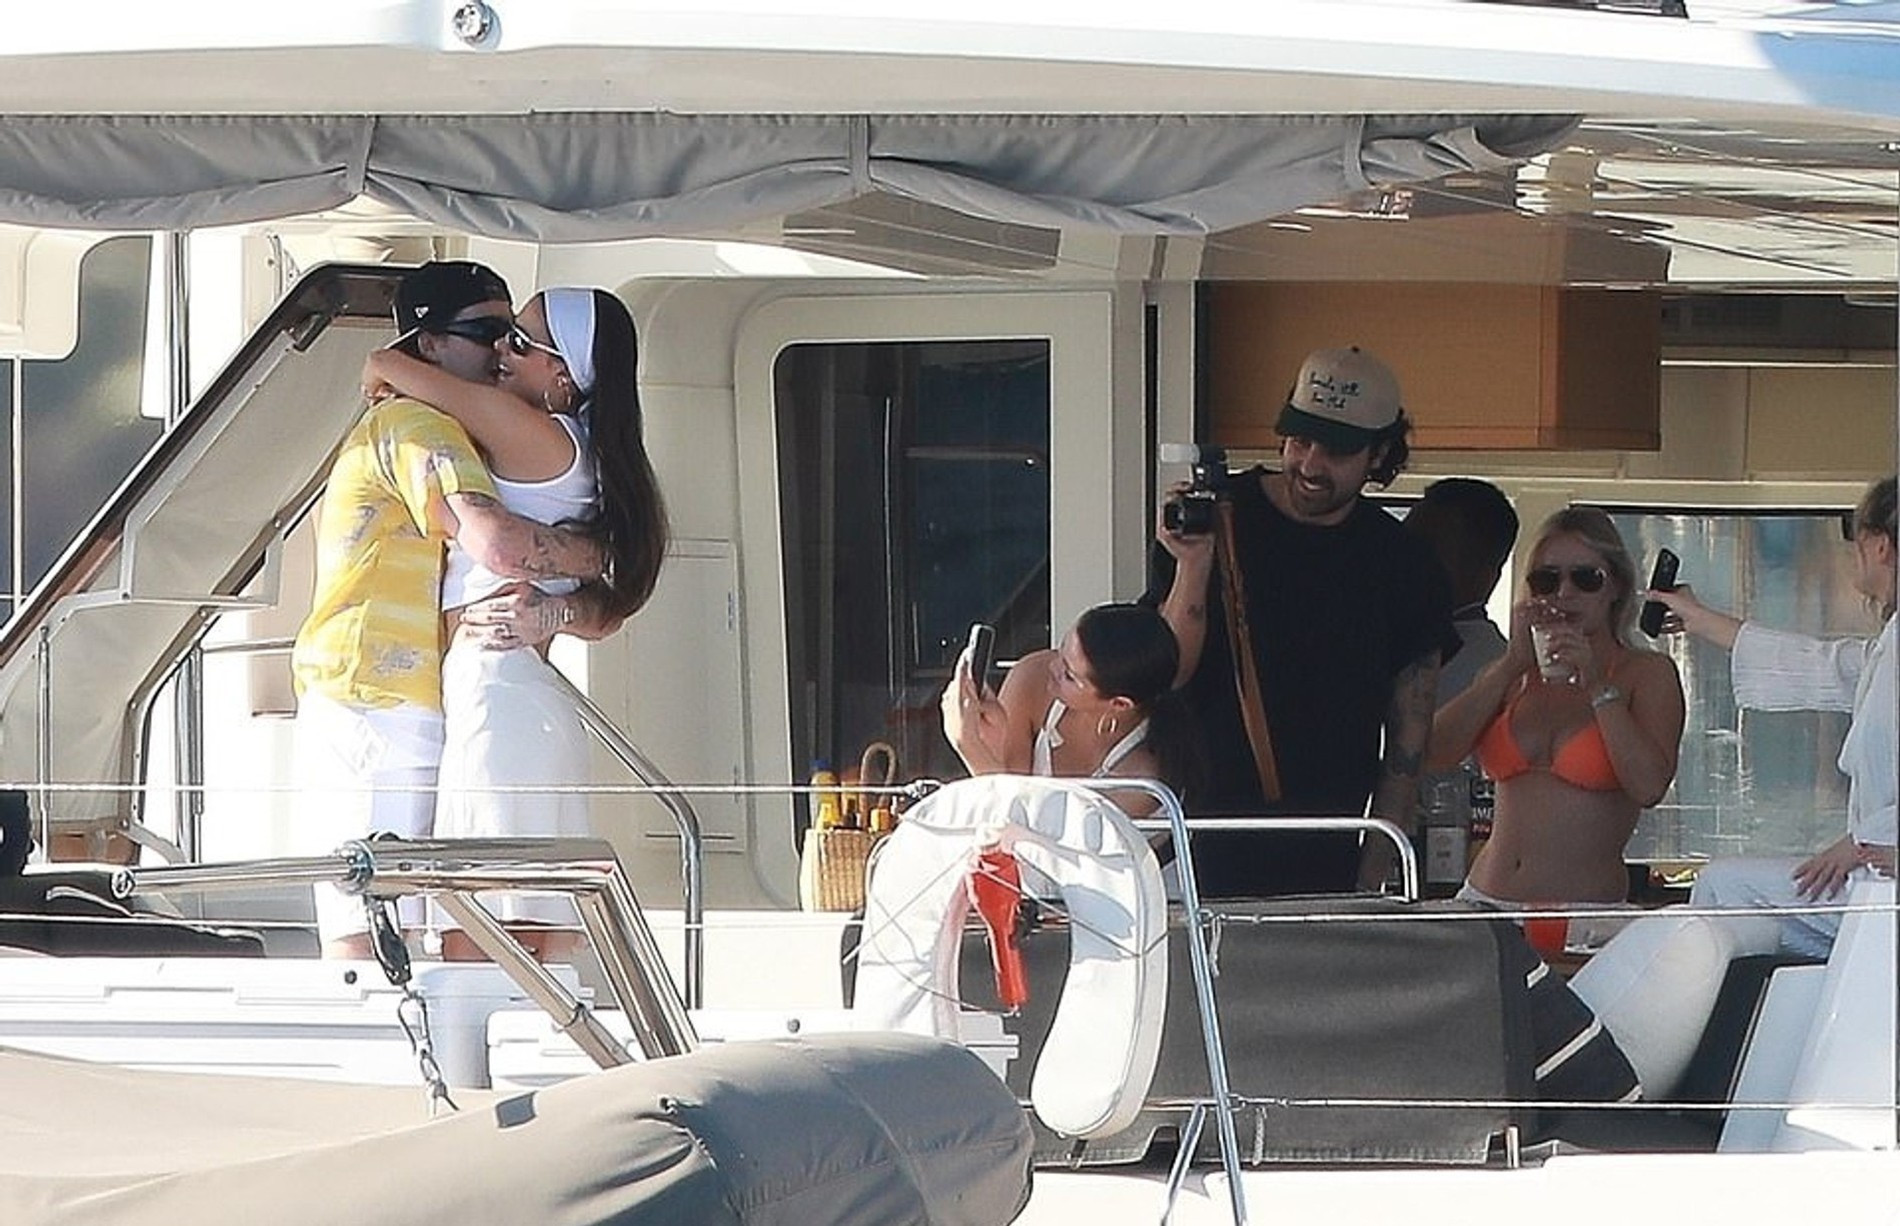 Селена Гомес, Никола Пельтц и Бруклин Бекхэм на яхте в Мексике
Фото: Daily Mail